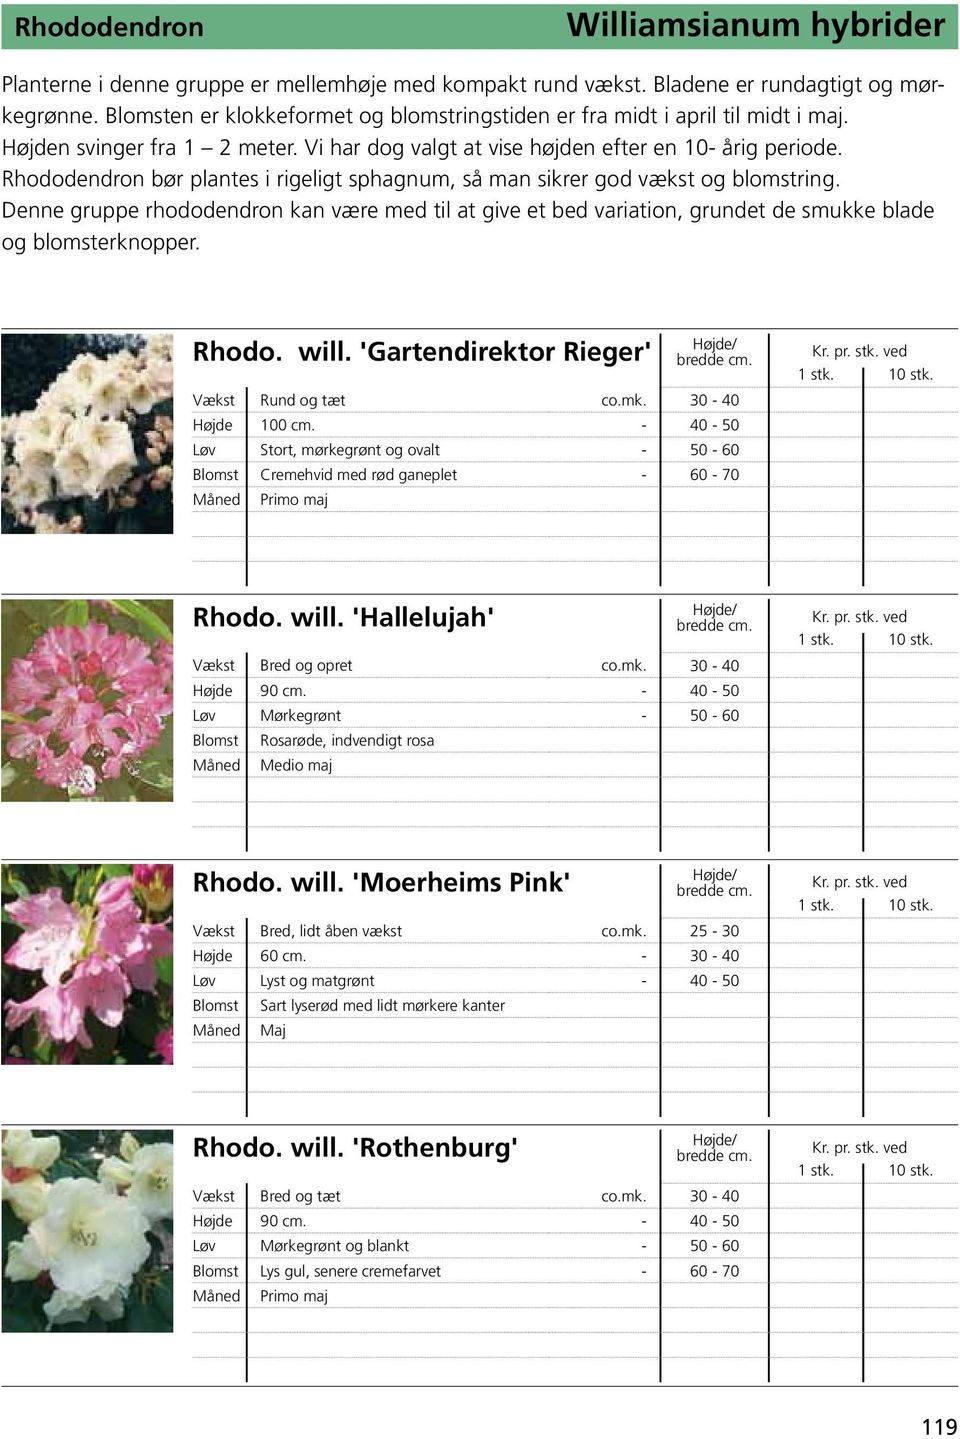 Rhododendron bør plantes i rigeligt sphagnum, så man sikrer god vækst og blomstring. Denne gruppe rhododendron kan være med til at give et bed variation, grundet de smukke blade og blomsterknopper.